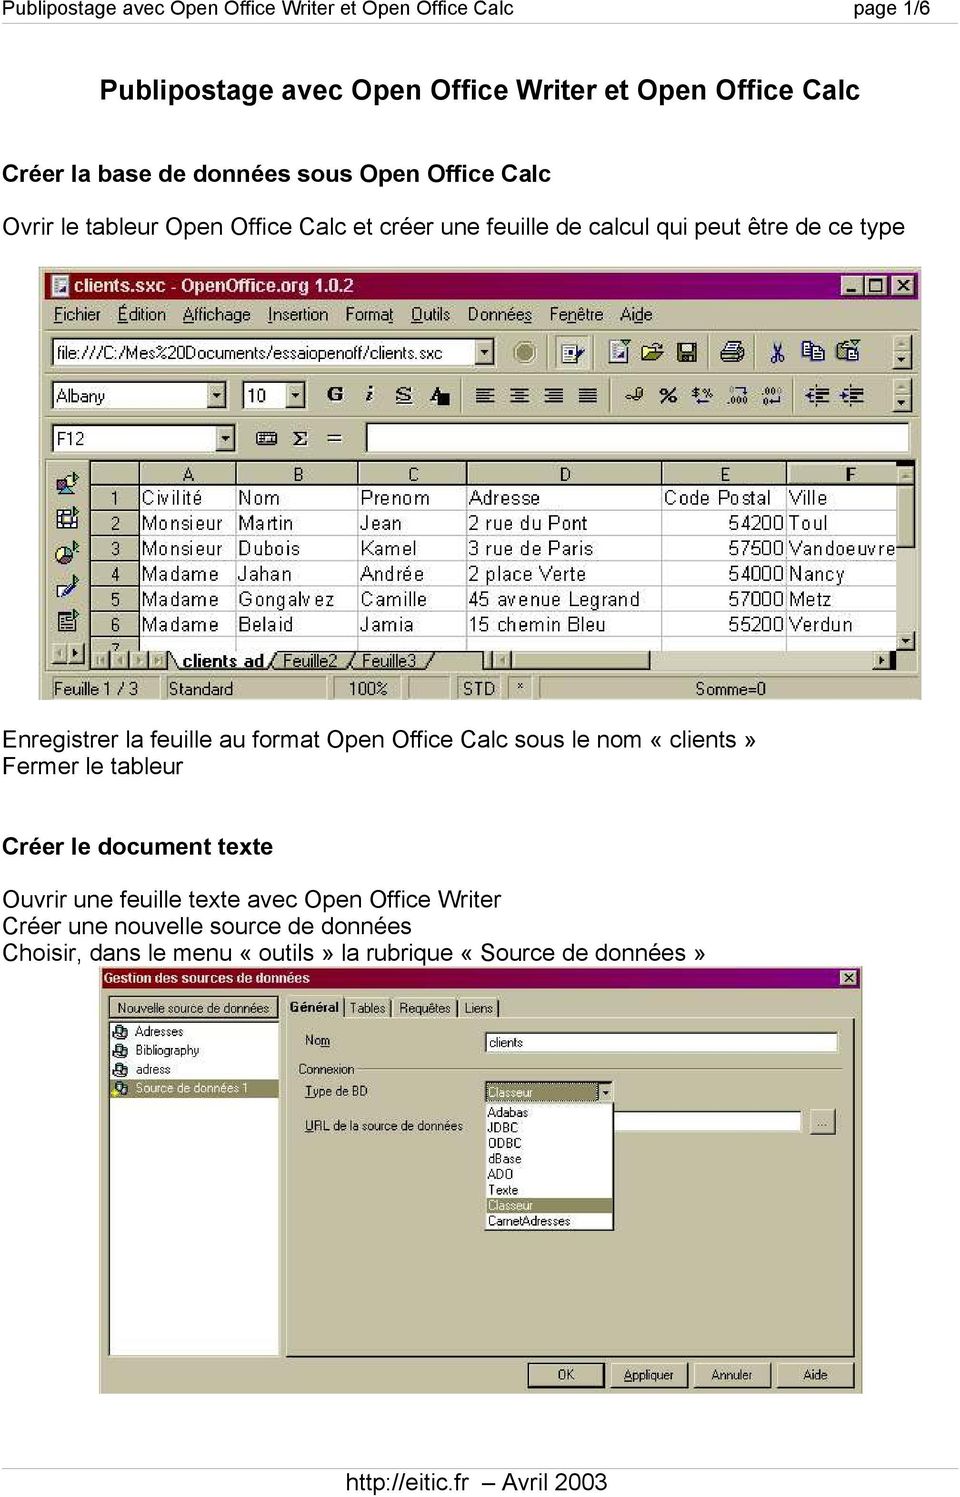 Enregistrer la feuille au format Open Office Calc sous le nom «clients» Fermer le tableur Créer le document texte Ouvrir une